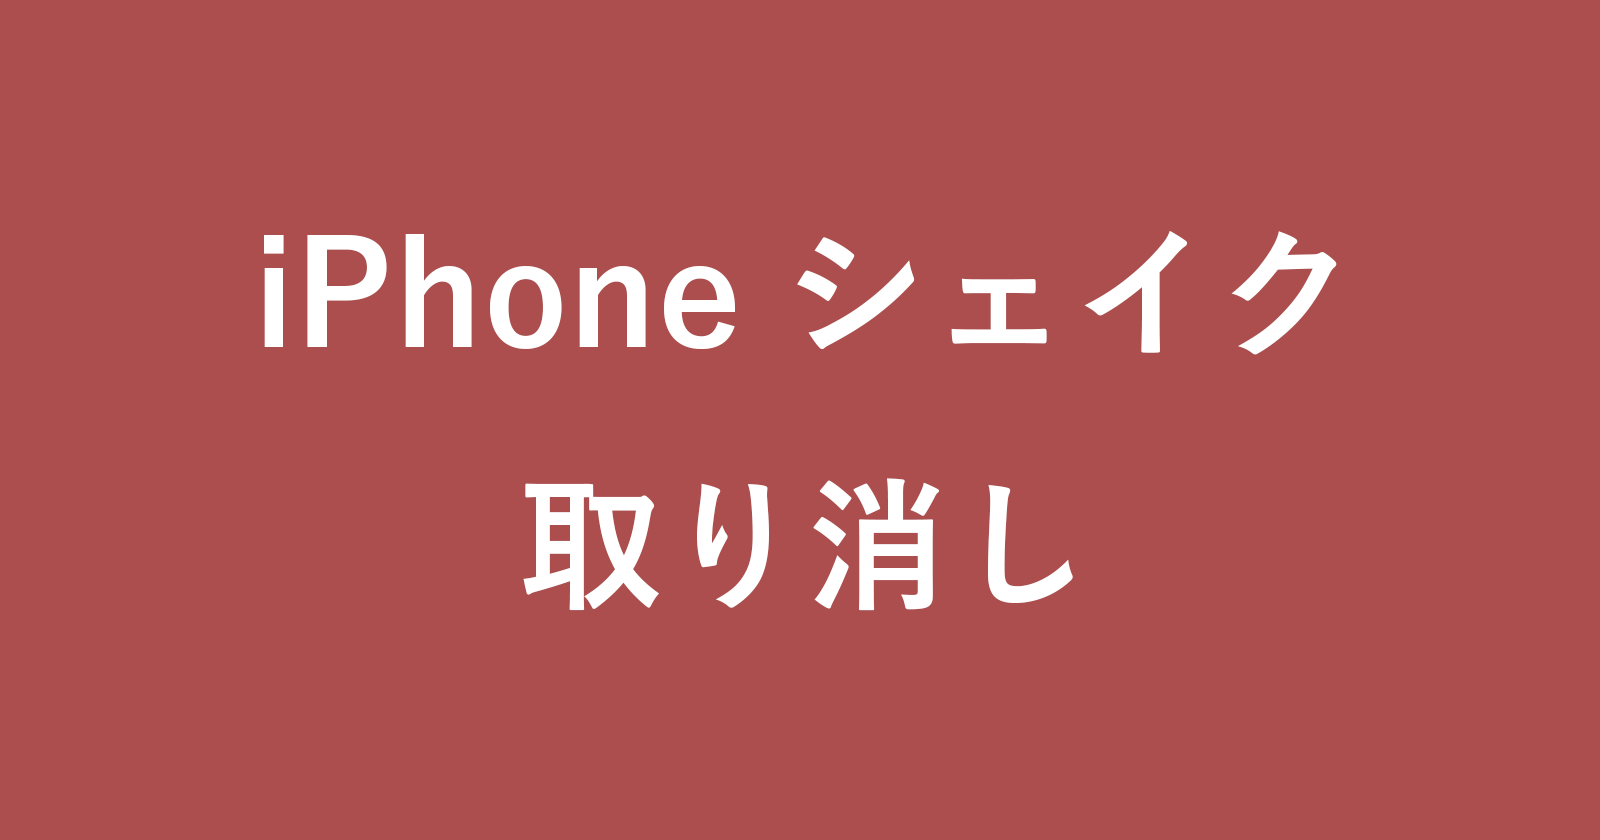 iphone shake undo